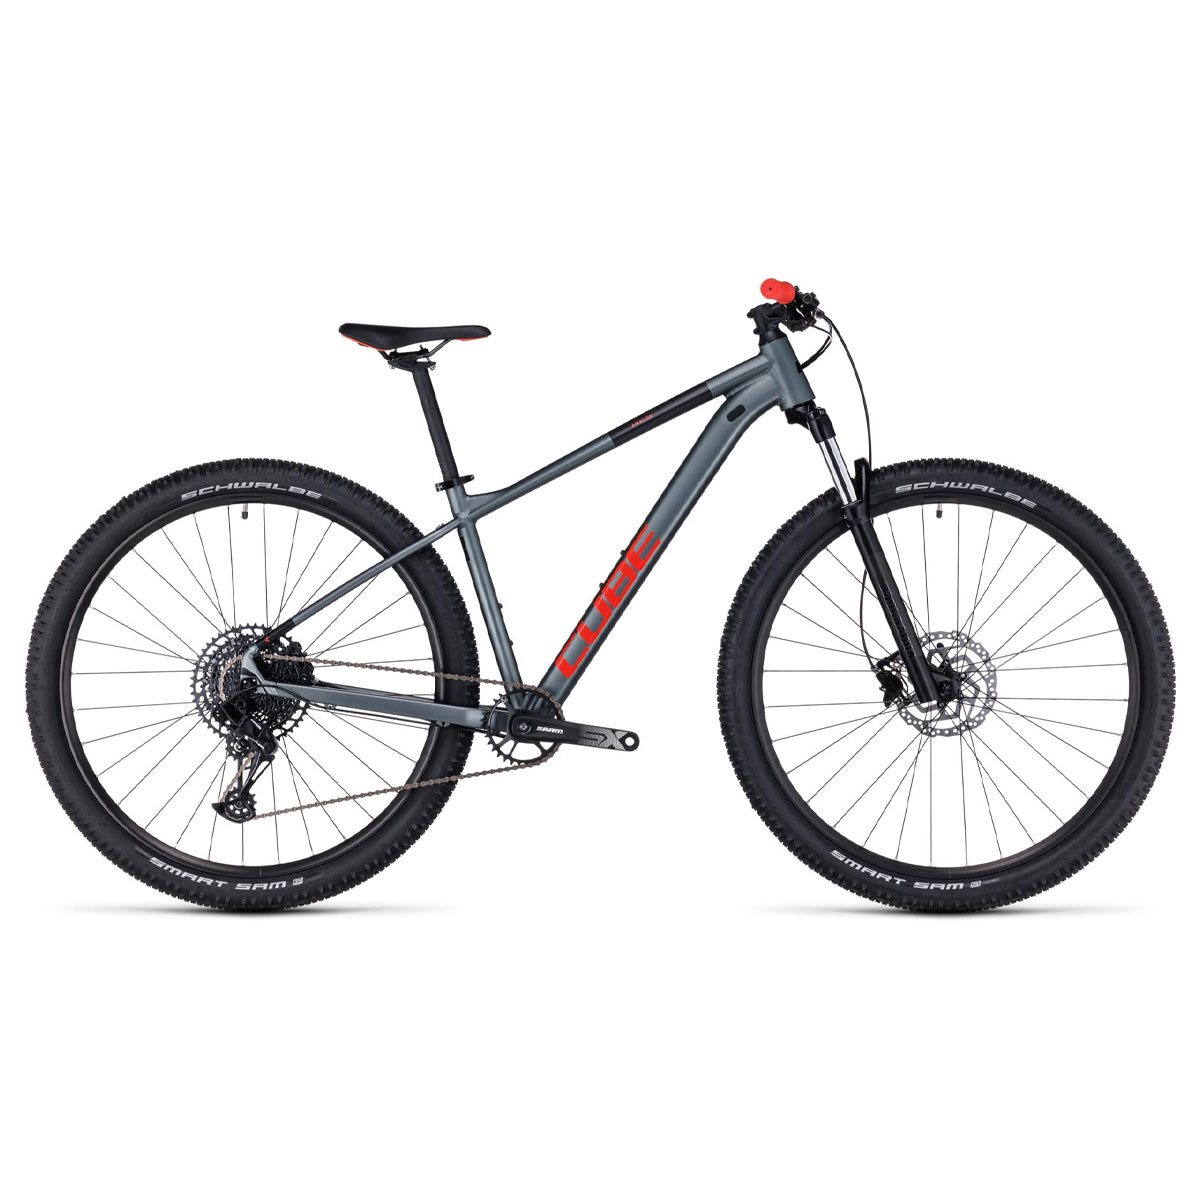 نکته خرید - قیمت روز دوچرخه کوهستان کیوب مدل ANALOG سایز طوقه 29 خرید